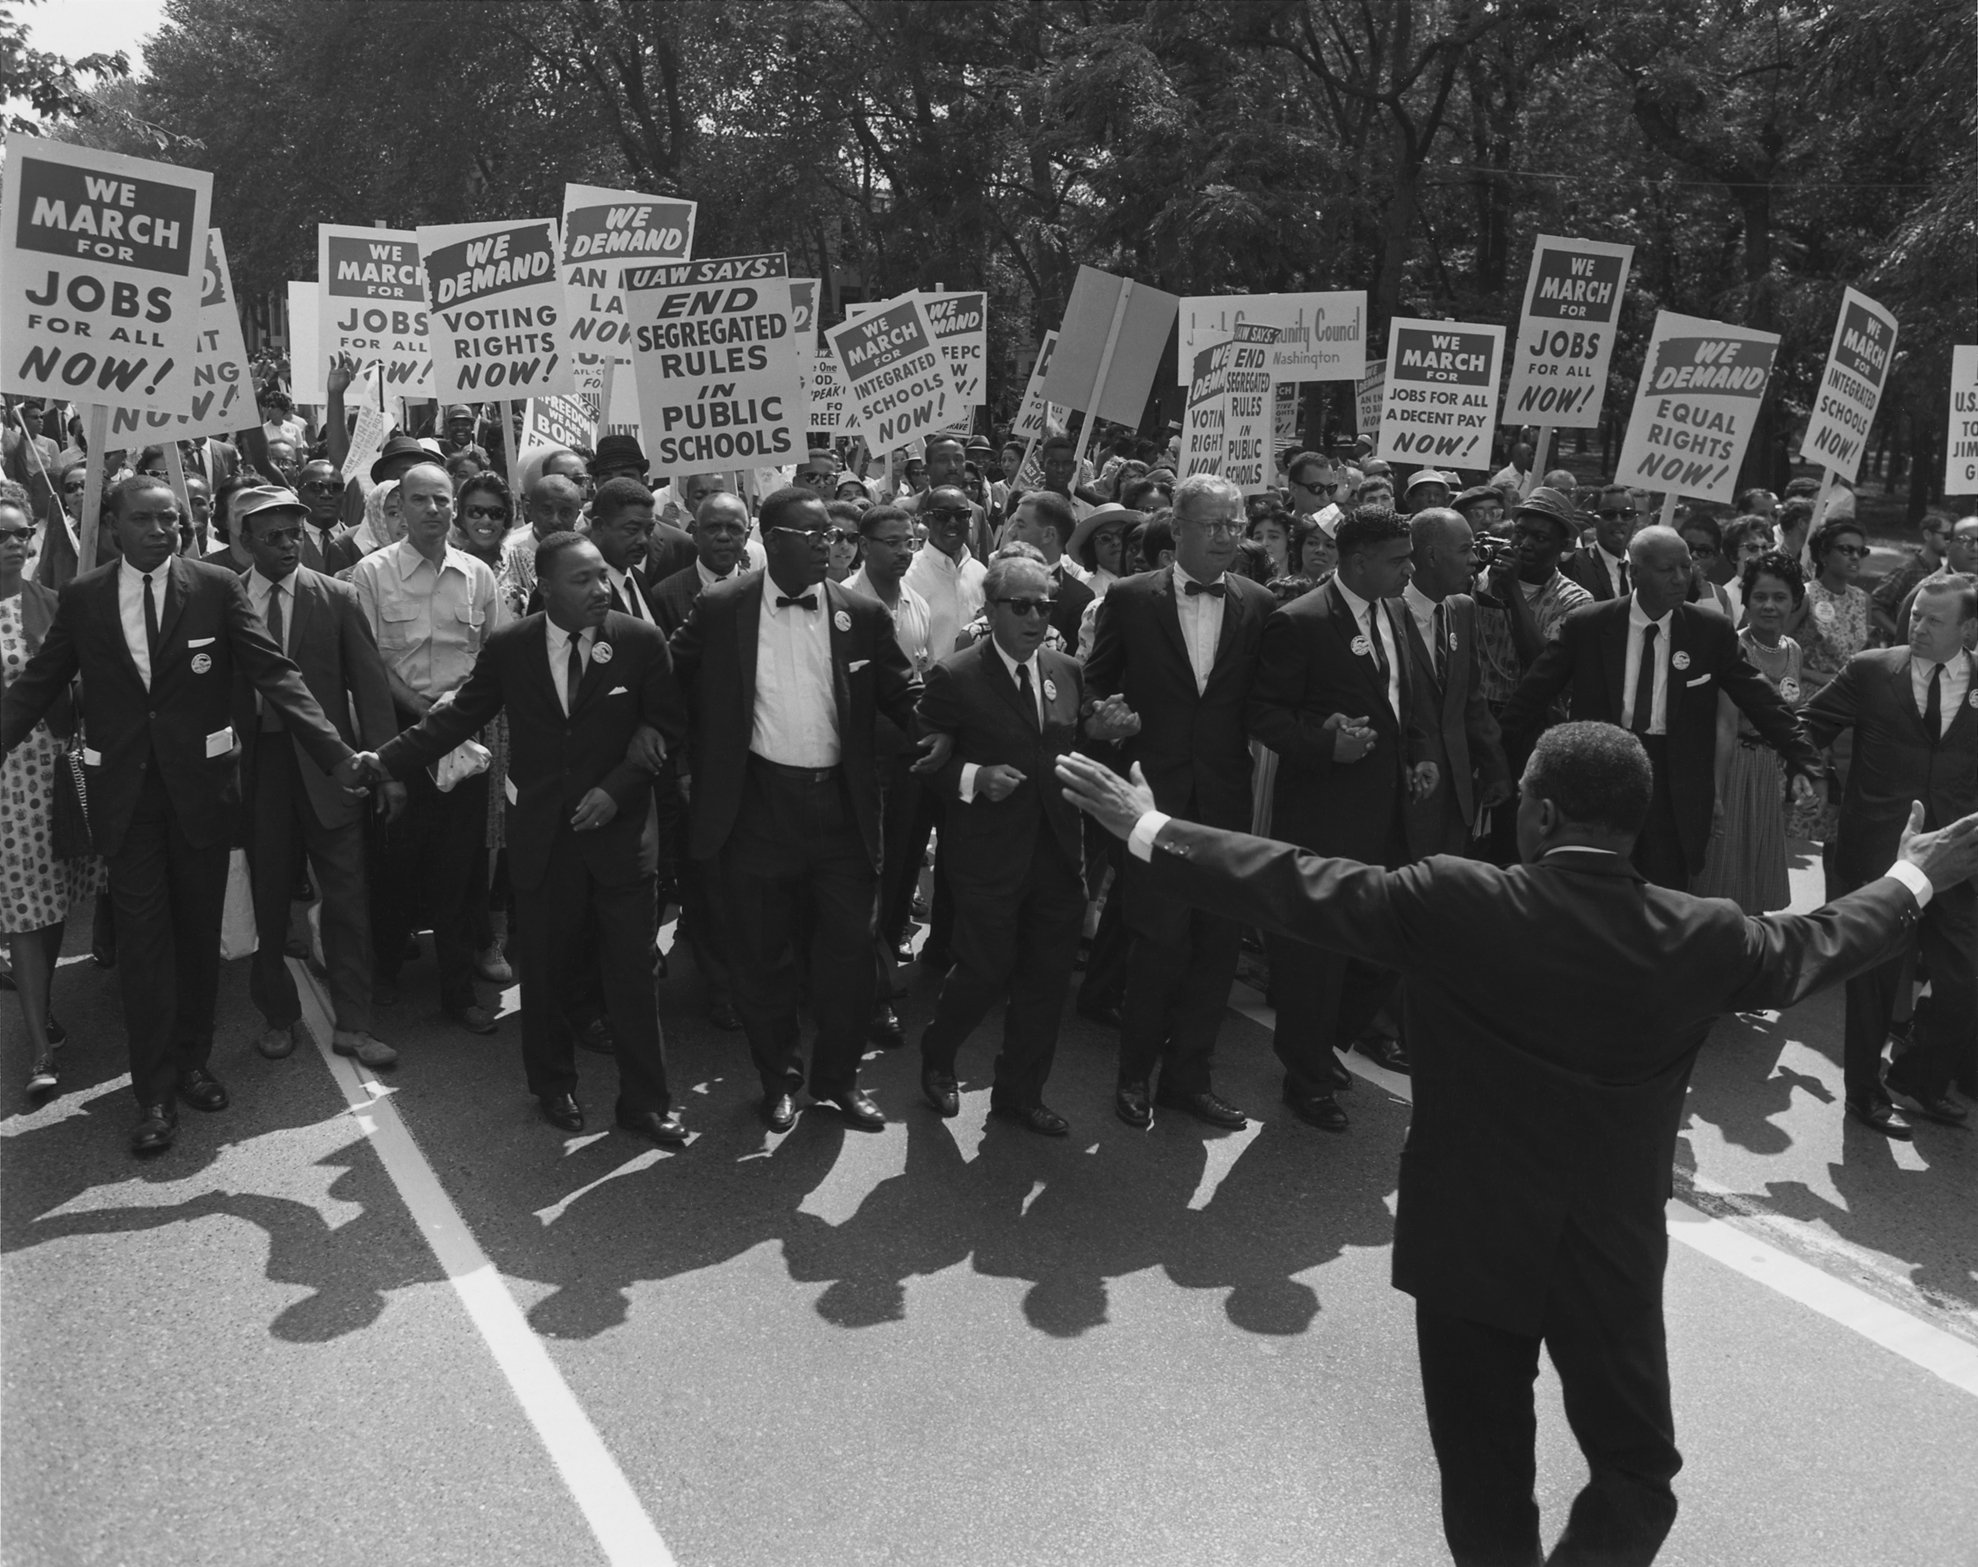 Marcha pelos direitos civis dos negros em 1963, EUA